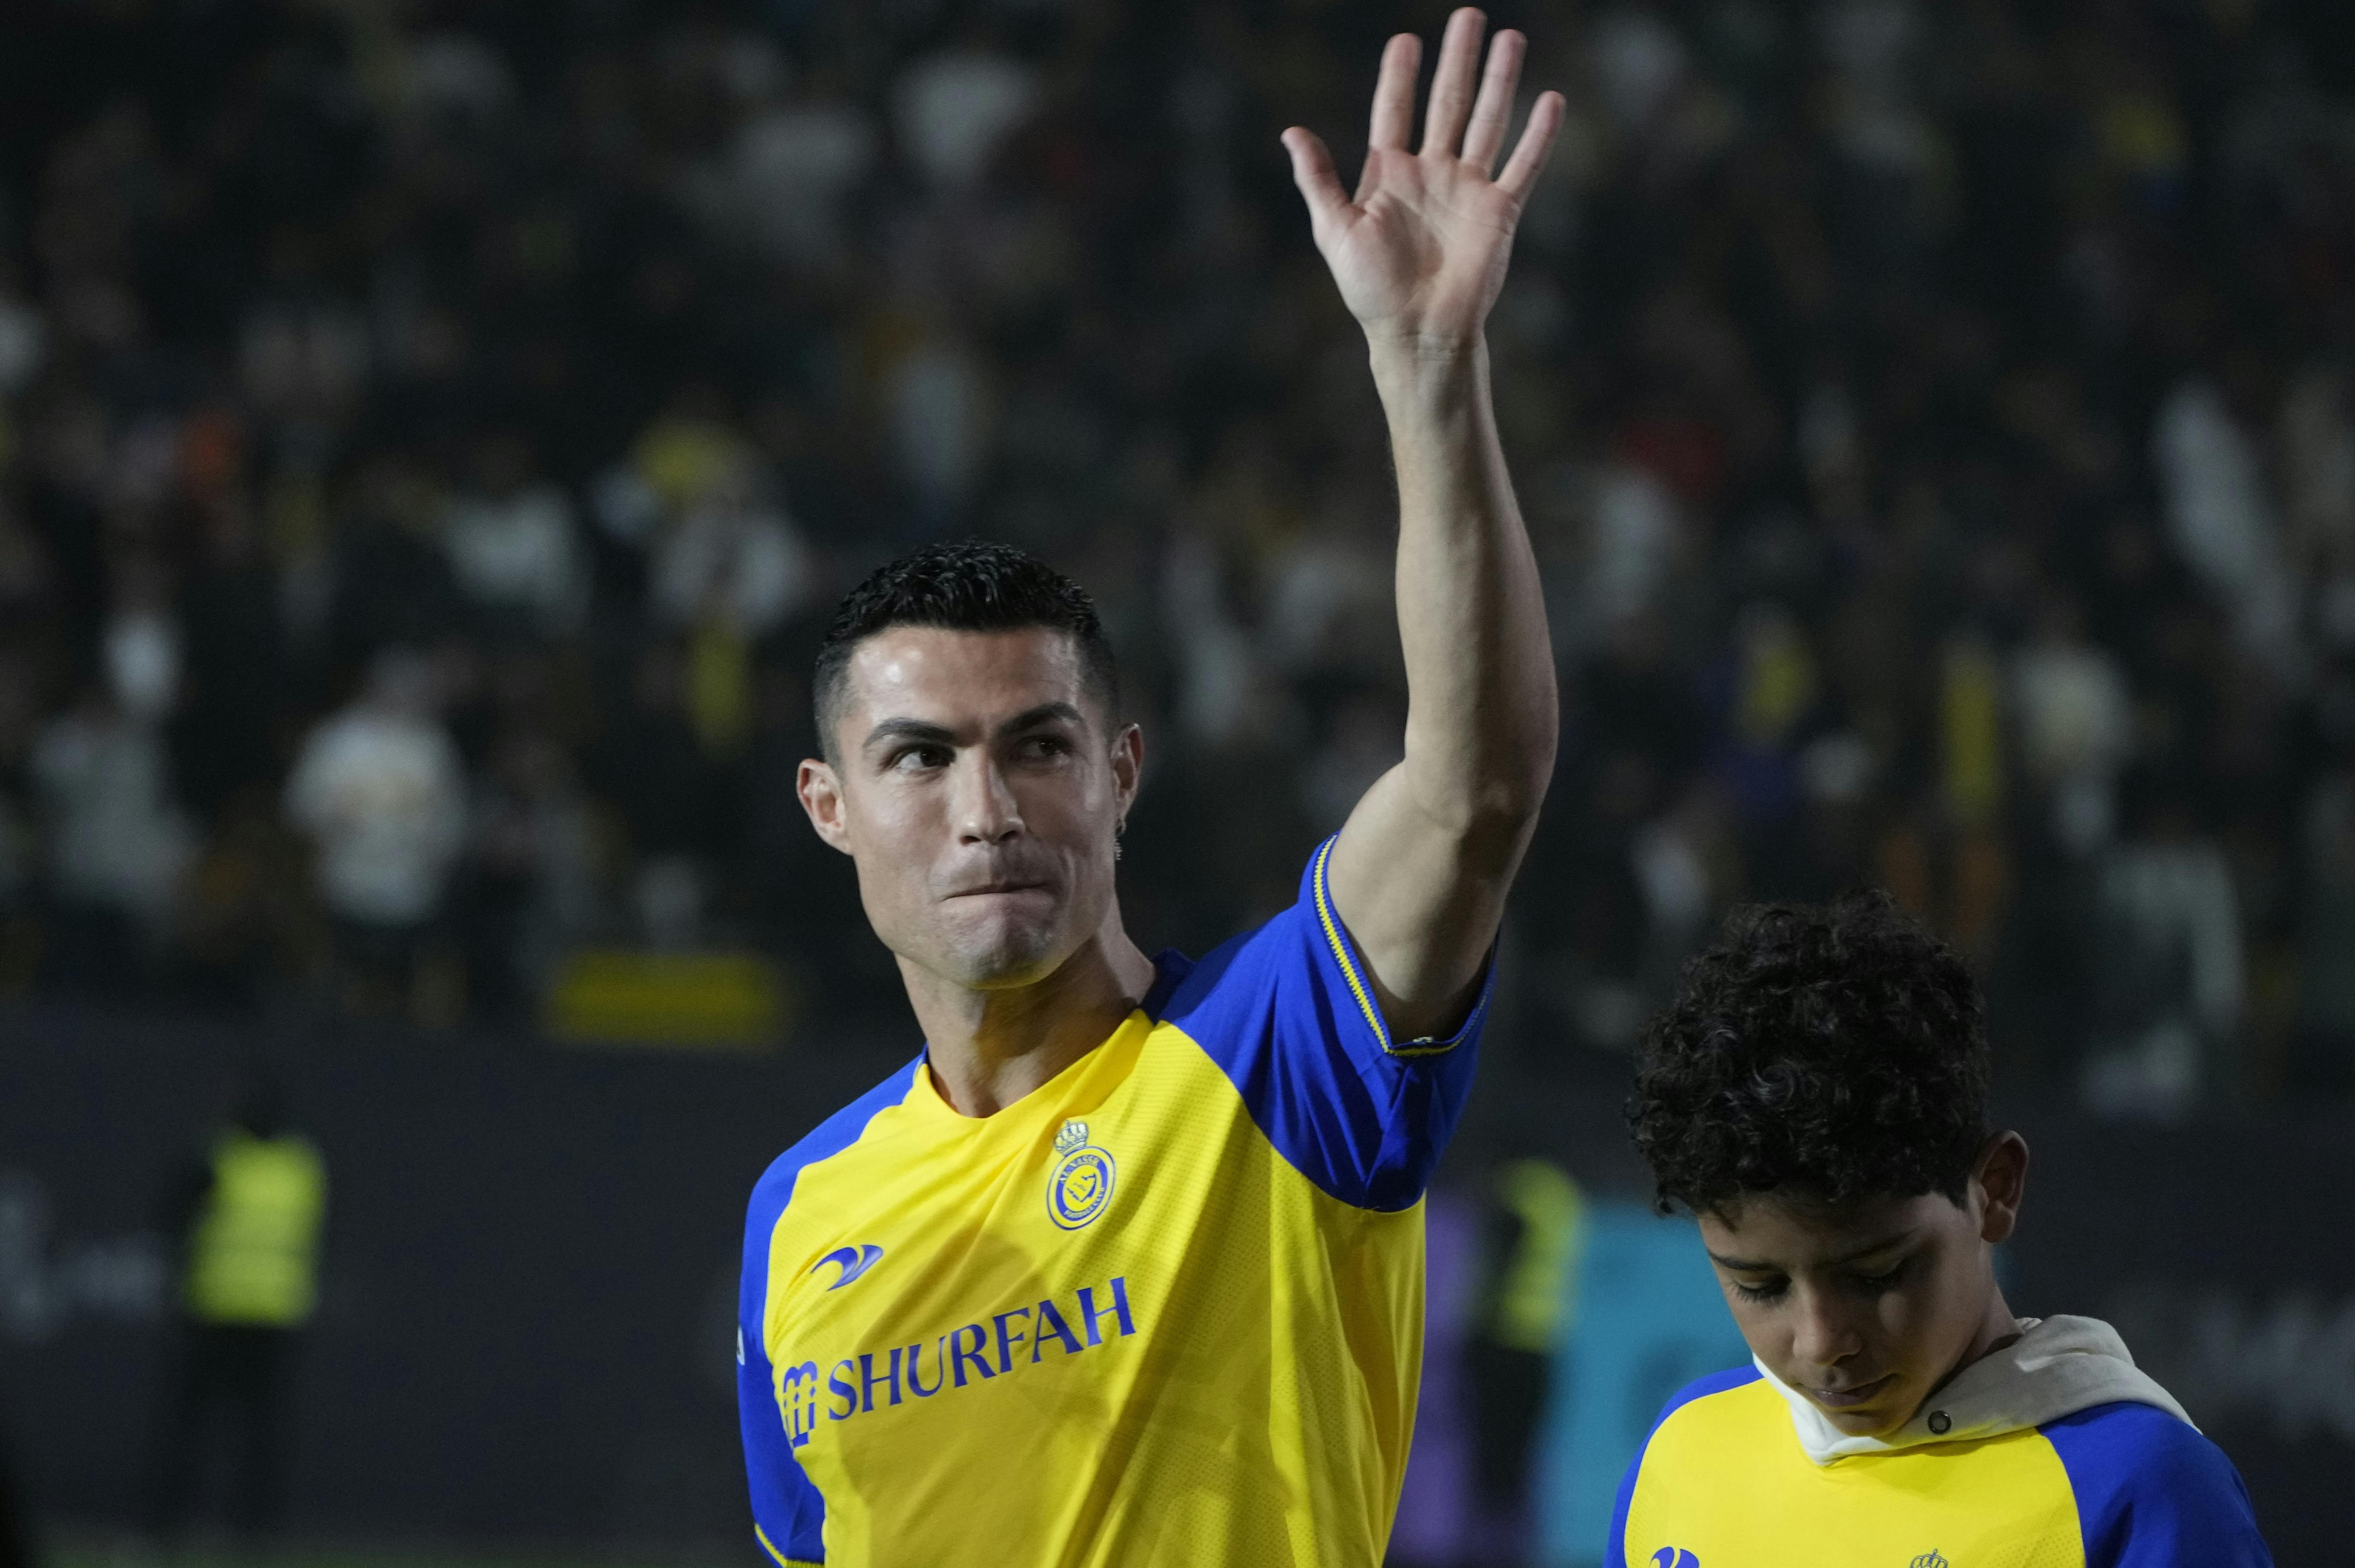 Den portugisiske fodboldstjerne Cristiano Ronaldos skiftede ved årsskiftet fra Manchester United til Al-Nassr i Saudi-Arabien på en kontrakt, der angiveligt indbringer ham omkring 1,4 milliarder kroner om året.